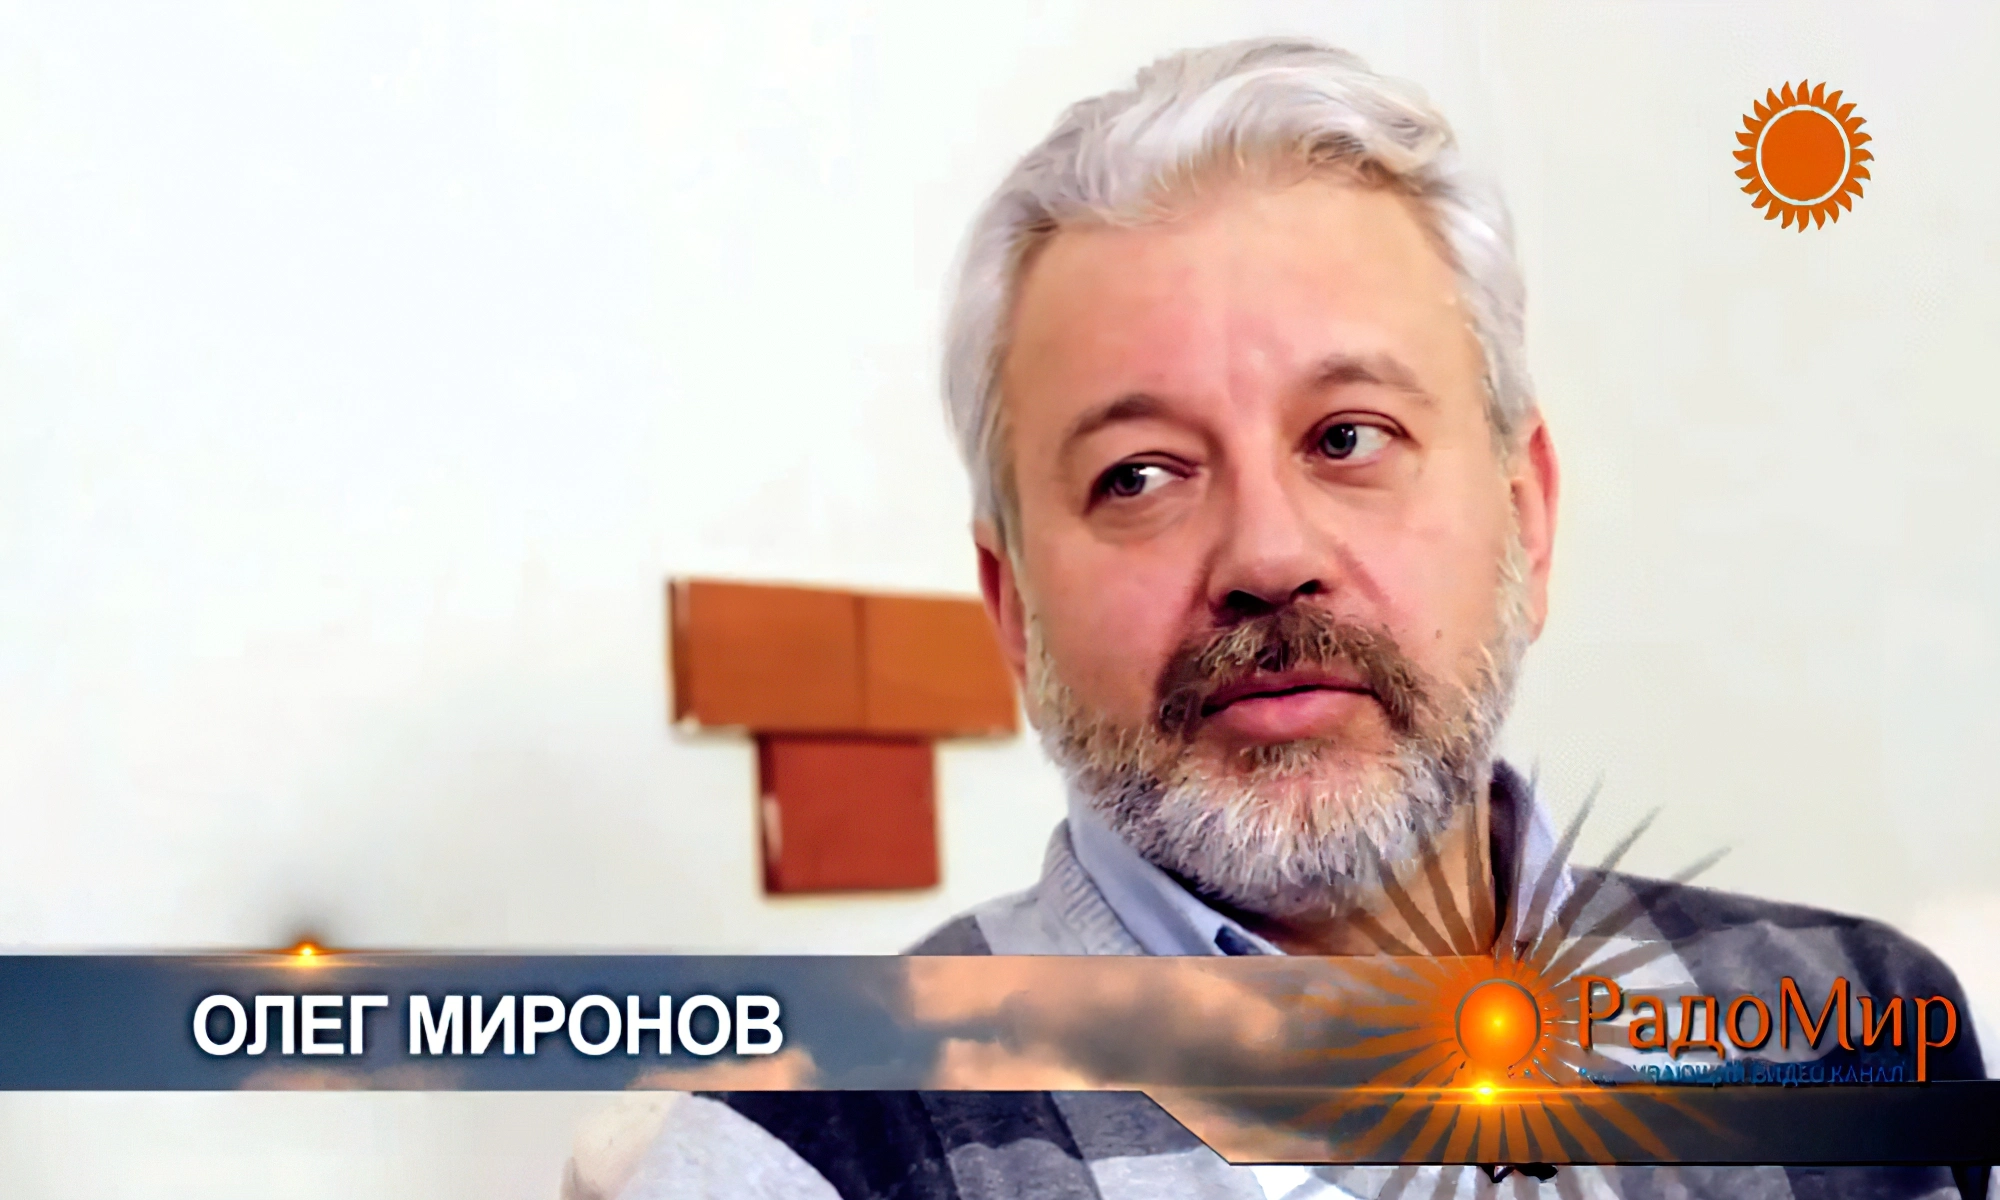 Олег Миронов - психотерапевт и бизнес-консультант